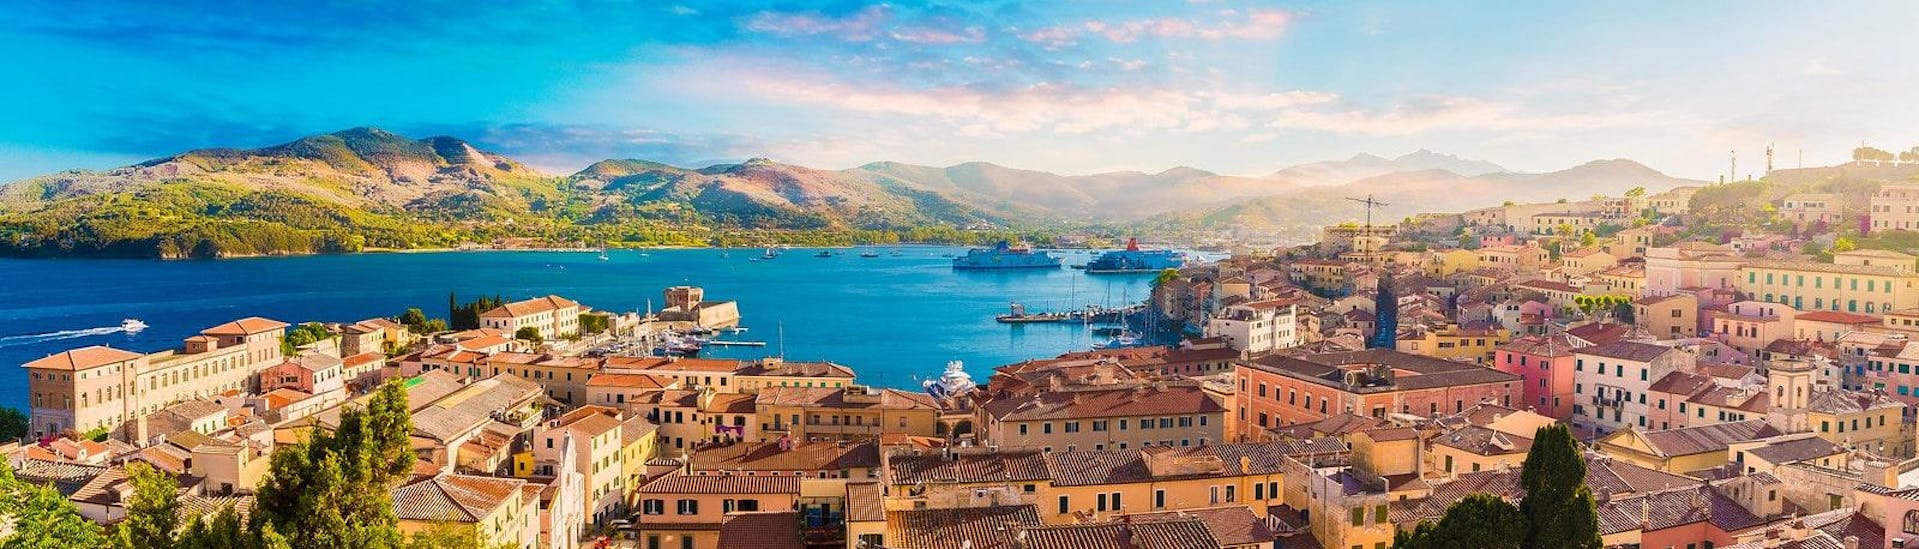 Schöne Aussicht auf die Altstadt und den Hafen von Portoferraio auf der Insel Elba in Italien.